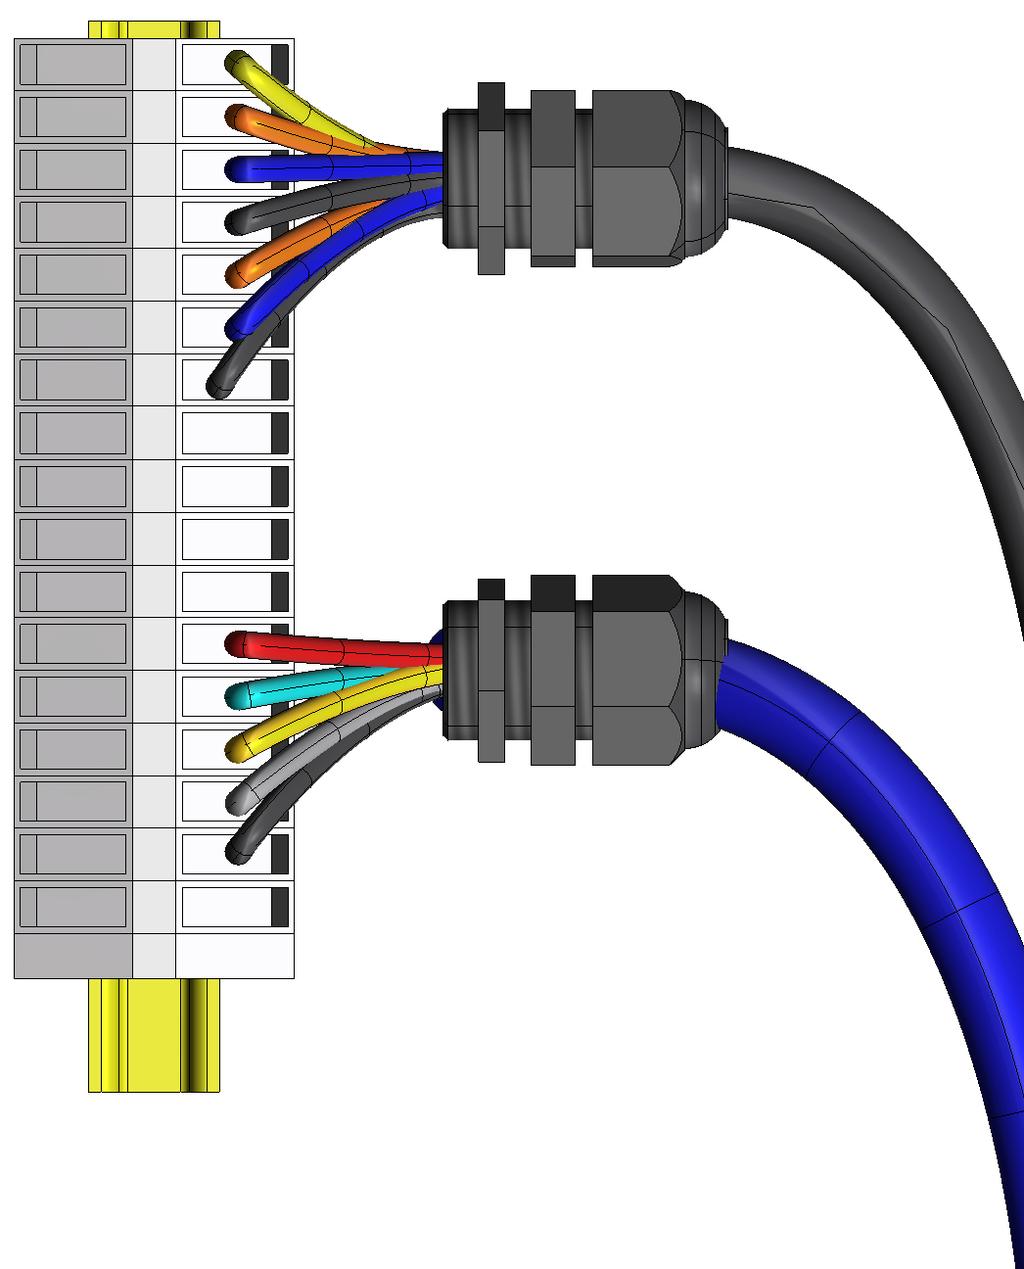 Deze kabel moet door een buis ø 45 mm en de speciale bestaande openingen in het frame van de verkeerspaal worden gehaald (Fig. 8 ref.